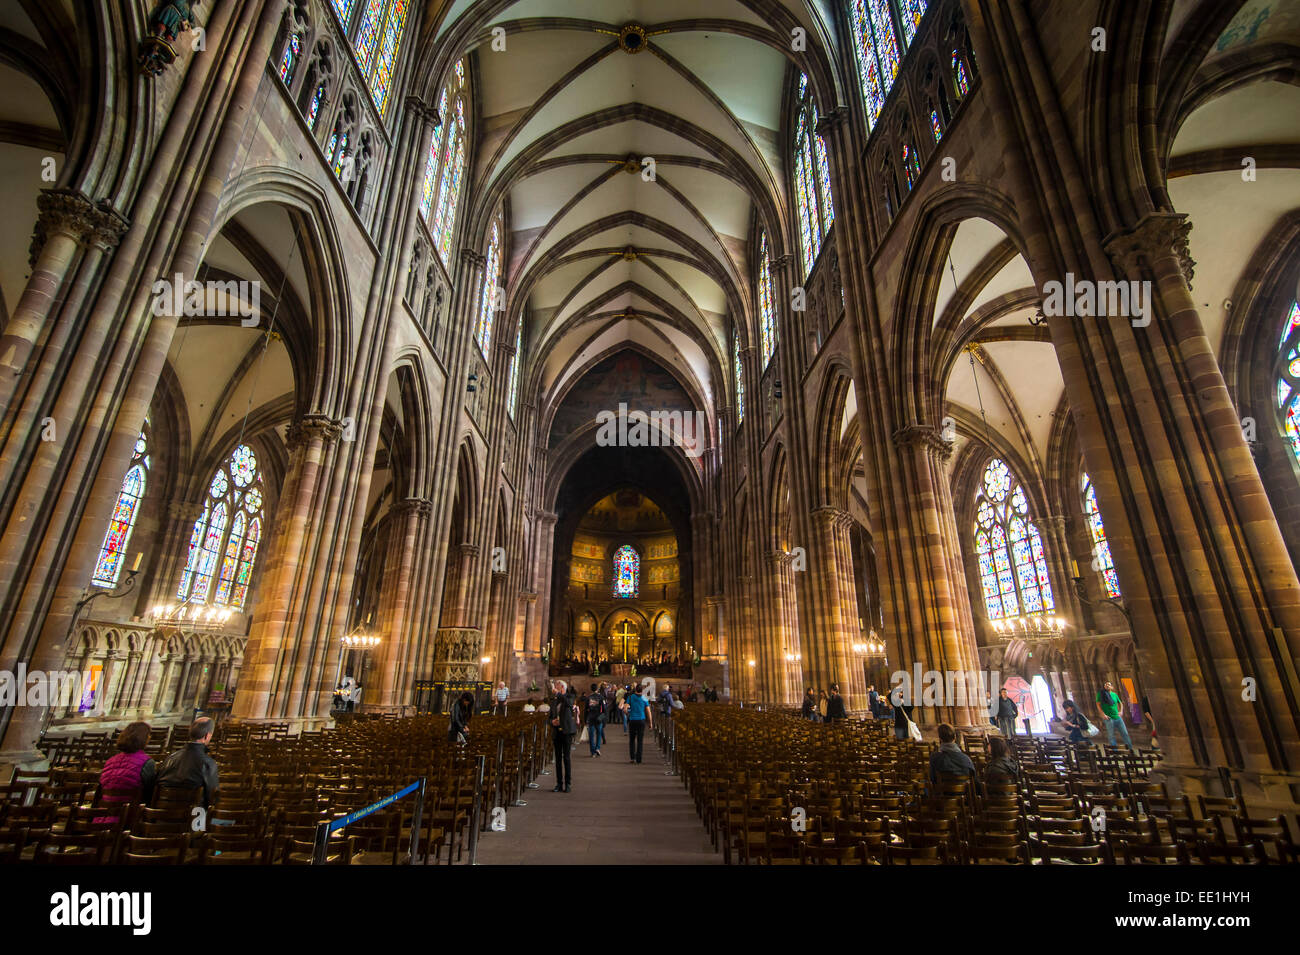 Vue de l'intérieur, la cathédrale de Strasbourg, Site du patrimoine mondial de l'UNESCO, Strasbourg, Alsace, France, Europe Banque D'Images